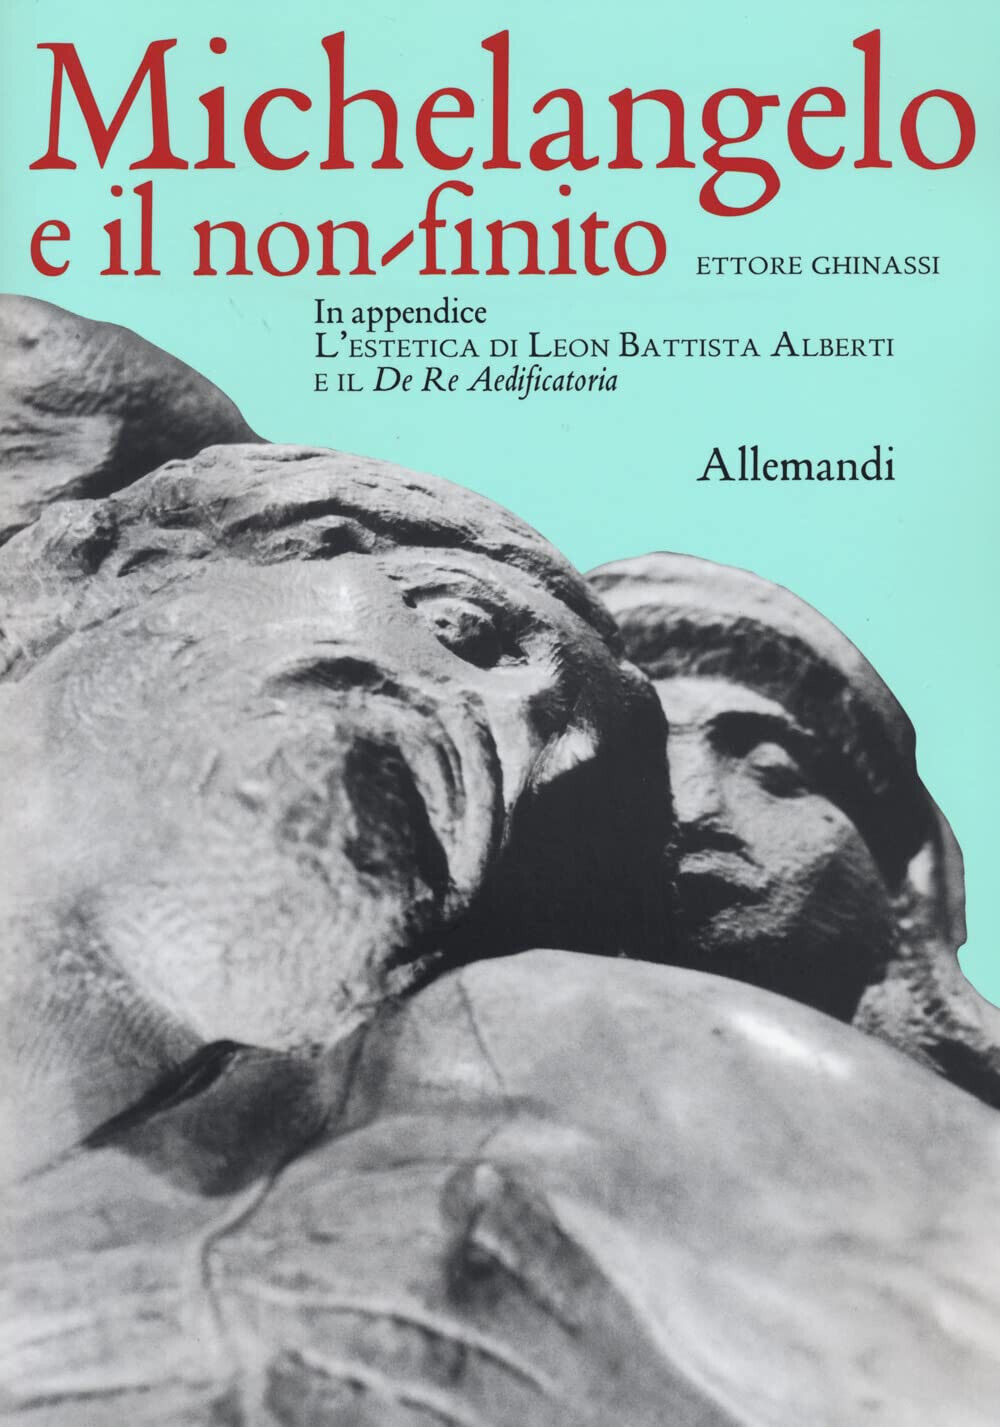 Michelangelo e il non finito - Ettore Ghinassi - Allemandi, 2022